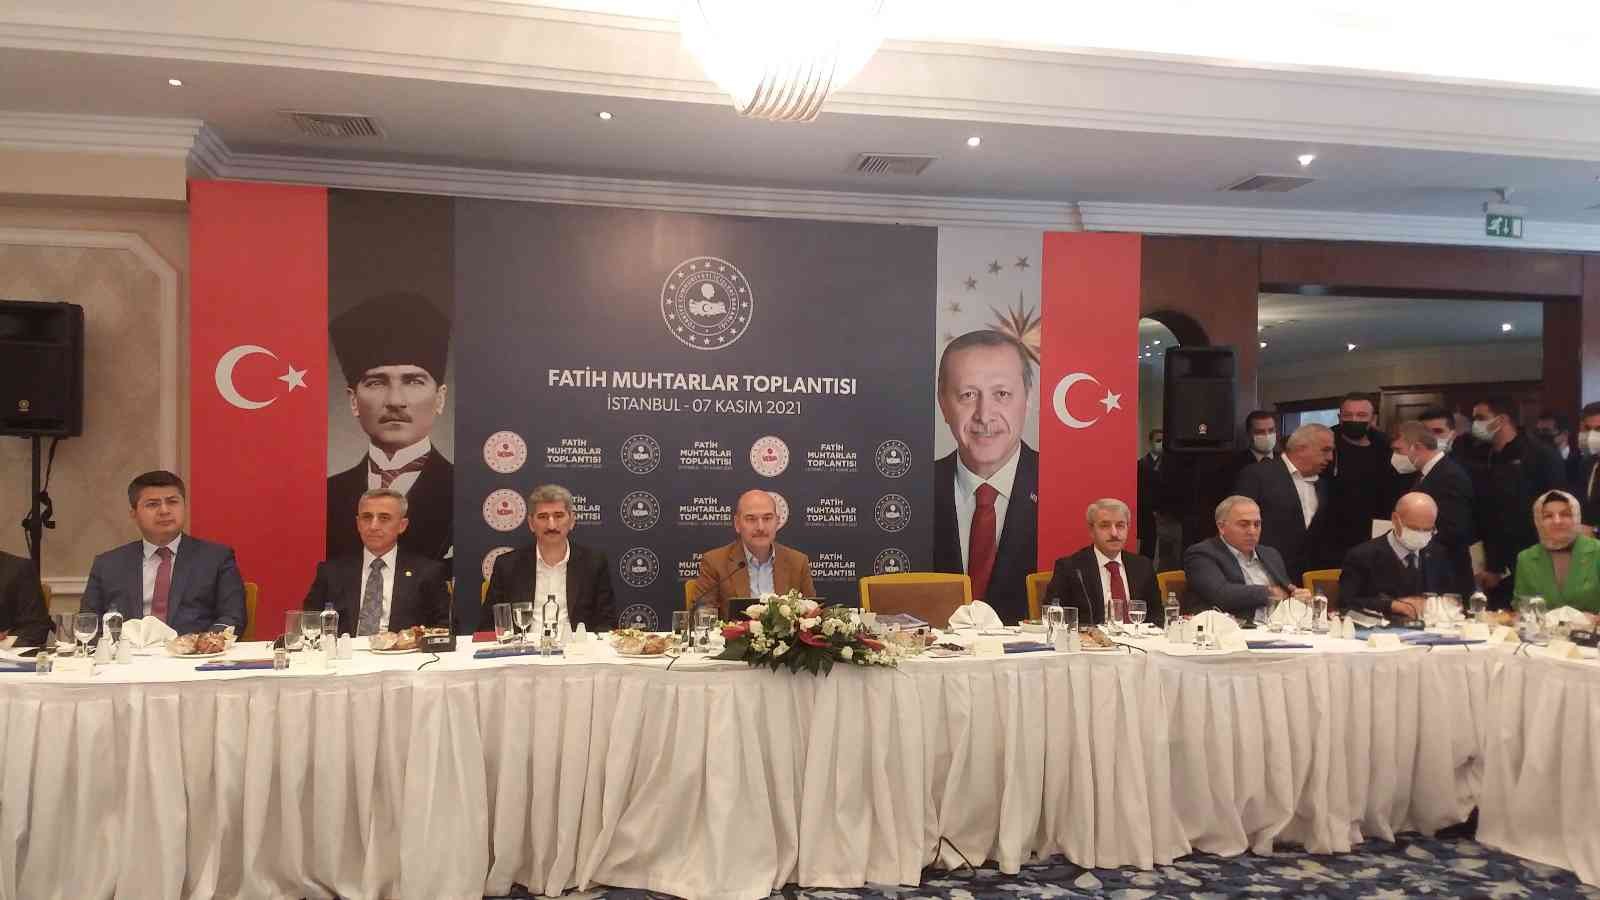 İçişleri Bakanı Soylu, Arnavutköy’de muhtarlarla bir araya geldi #istanbul